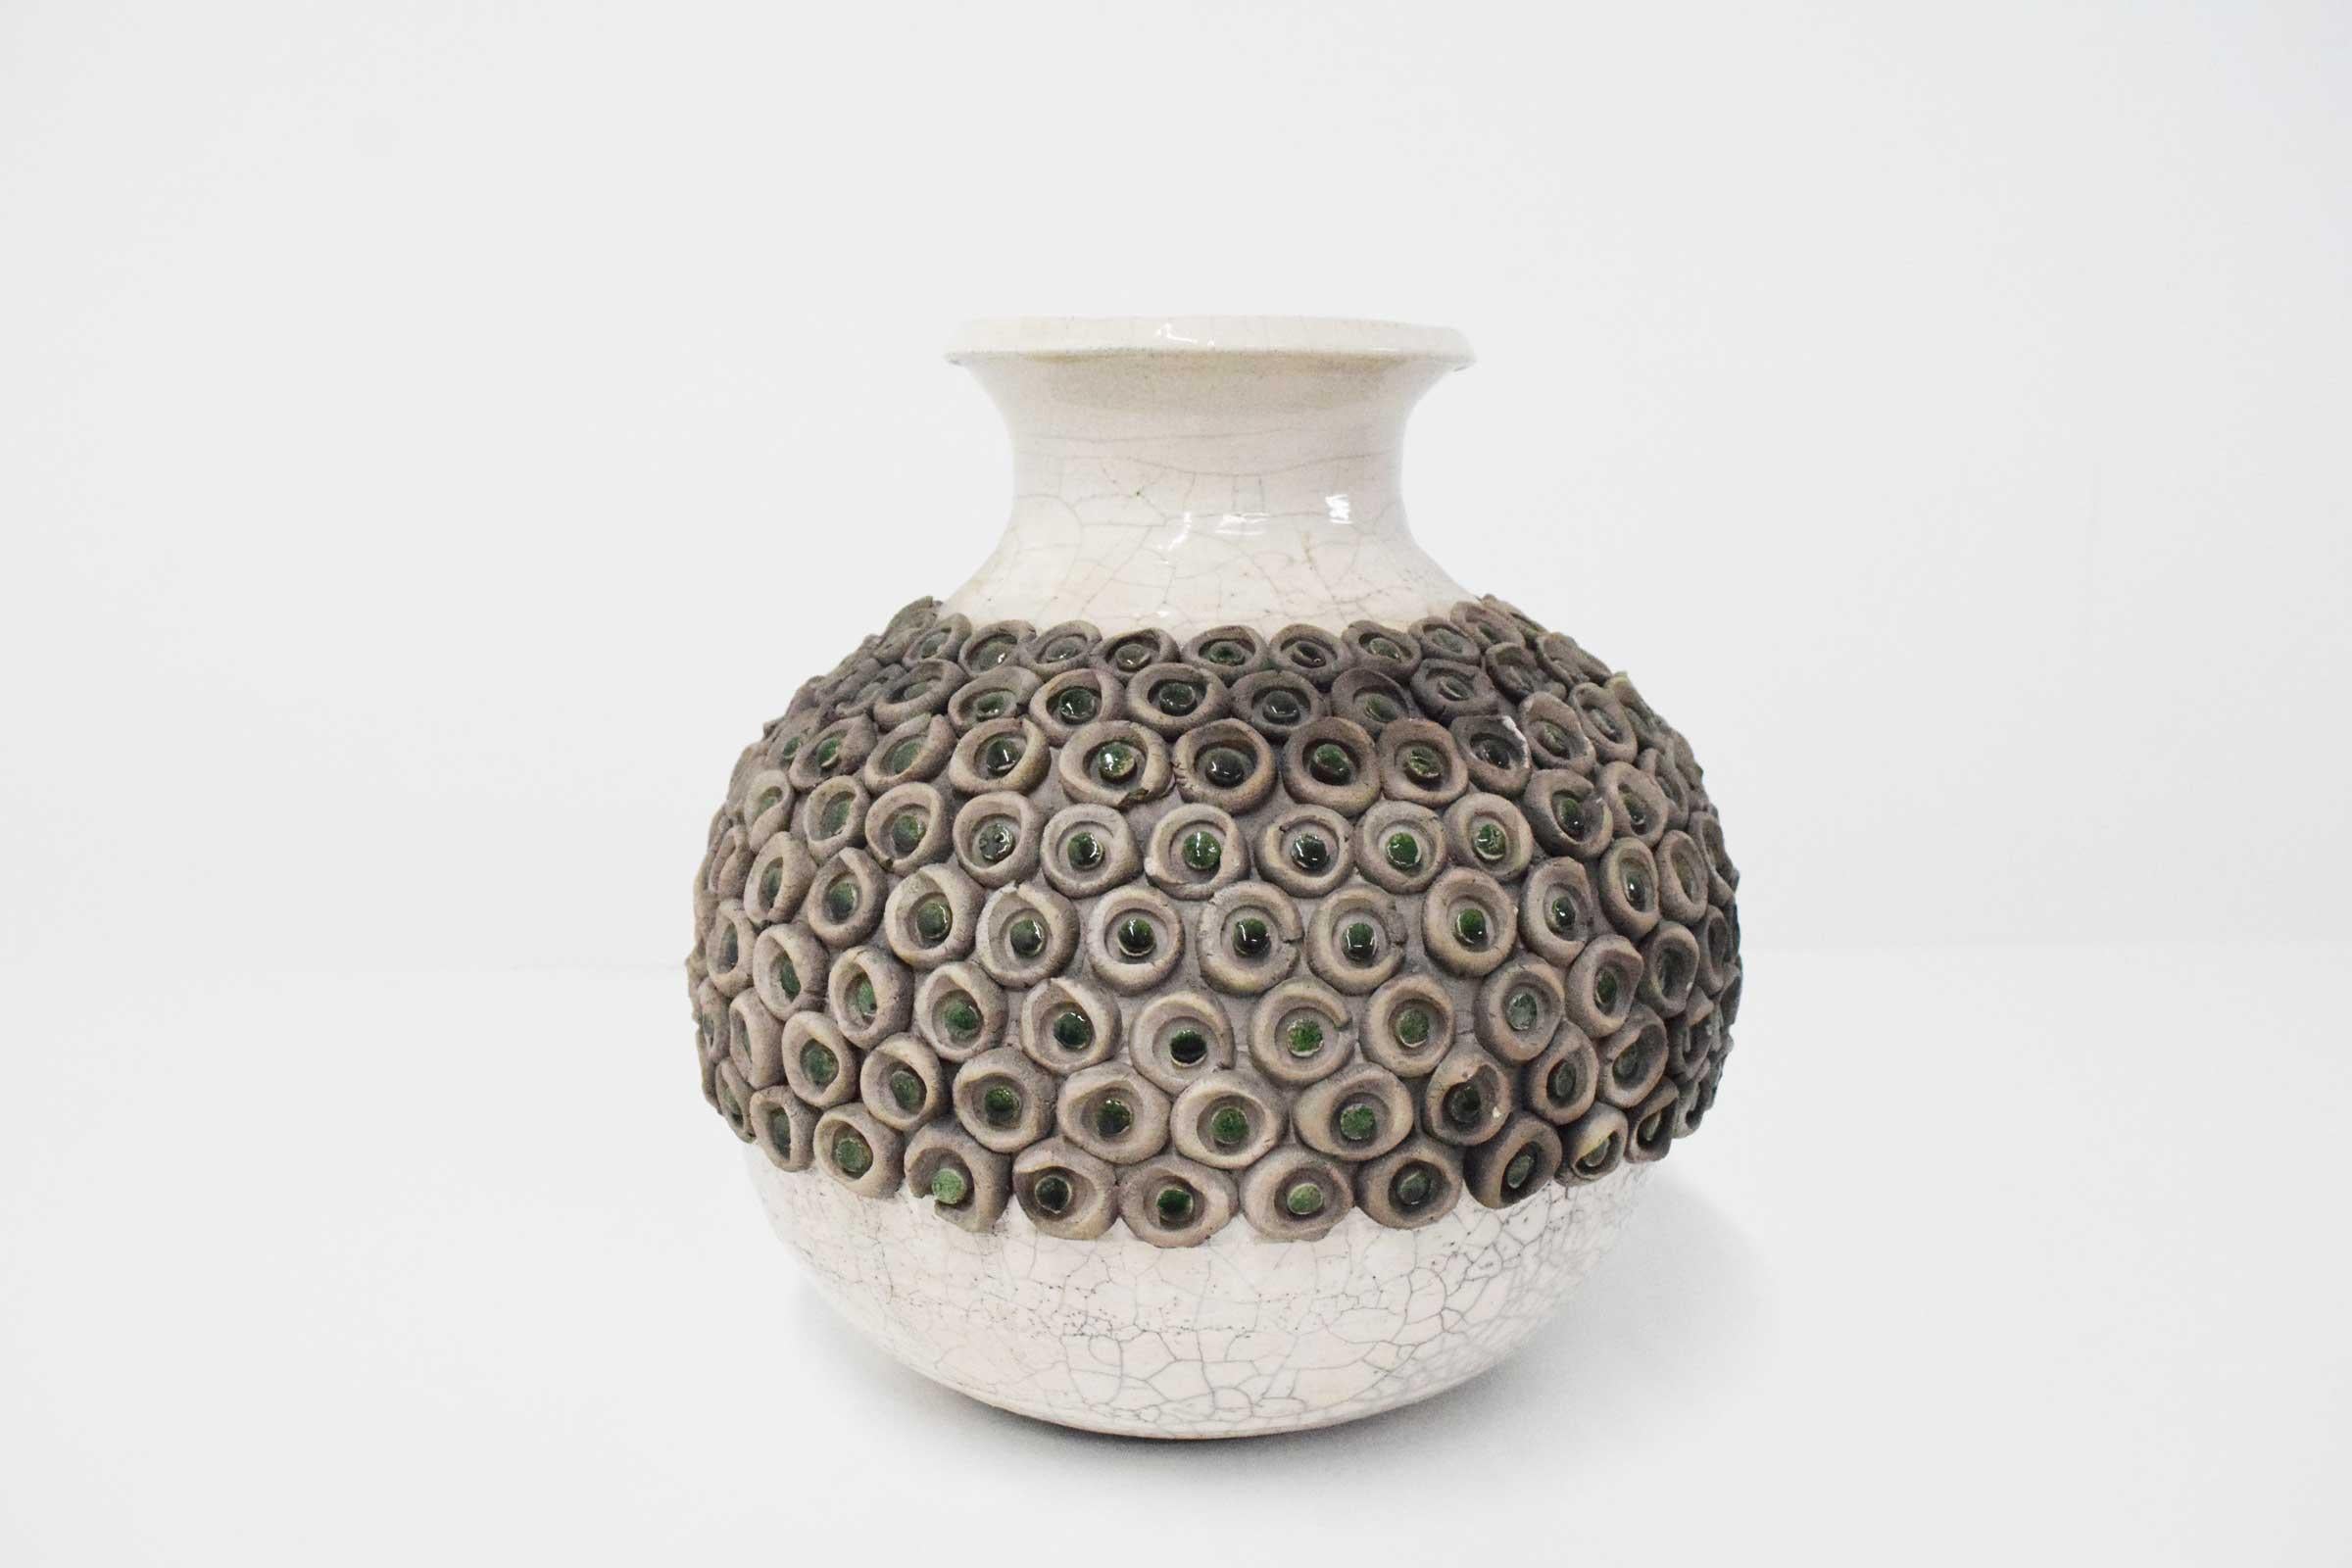 Beaucoup de détails intéressants dans ce magnifique vase en céramique de style moderne du milieu du siècle.  Vase en céramique émaillée, orné de cercles circulaires en céramique et de points en céramique émaillée verte. 